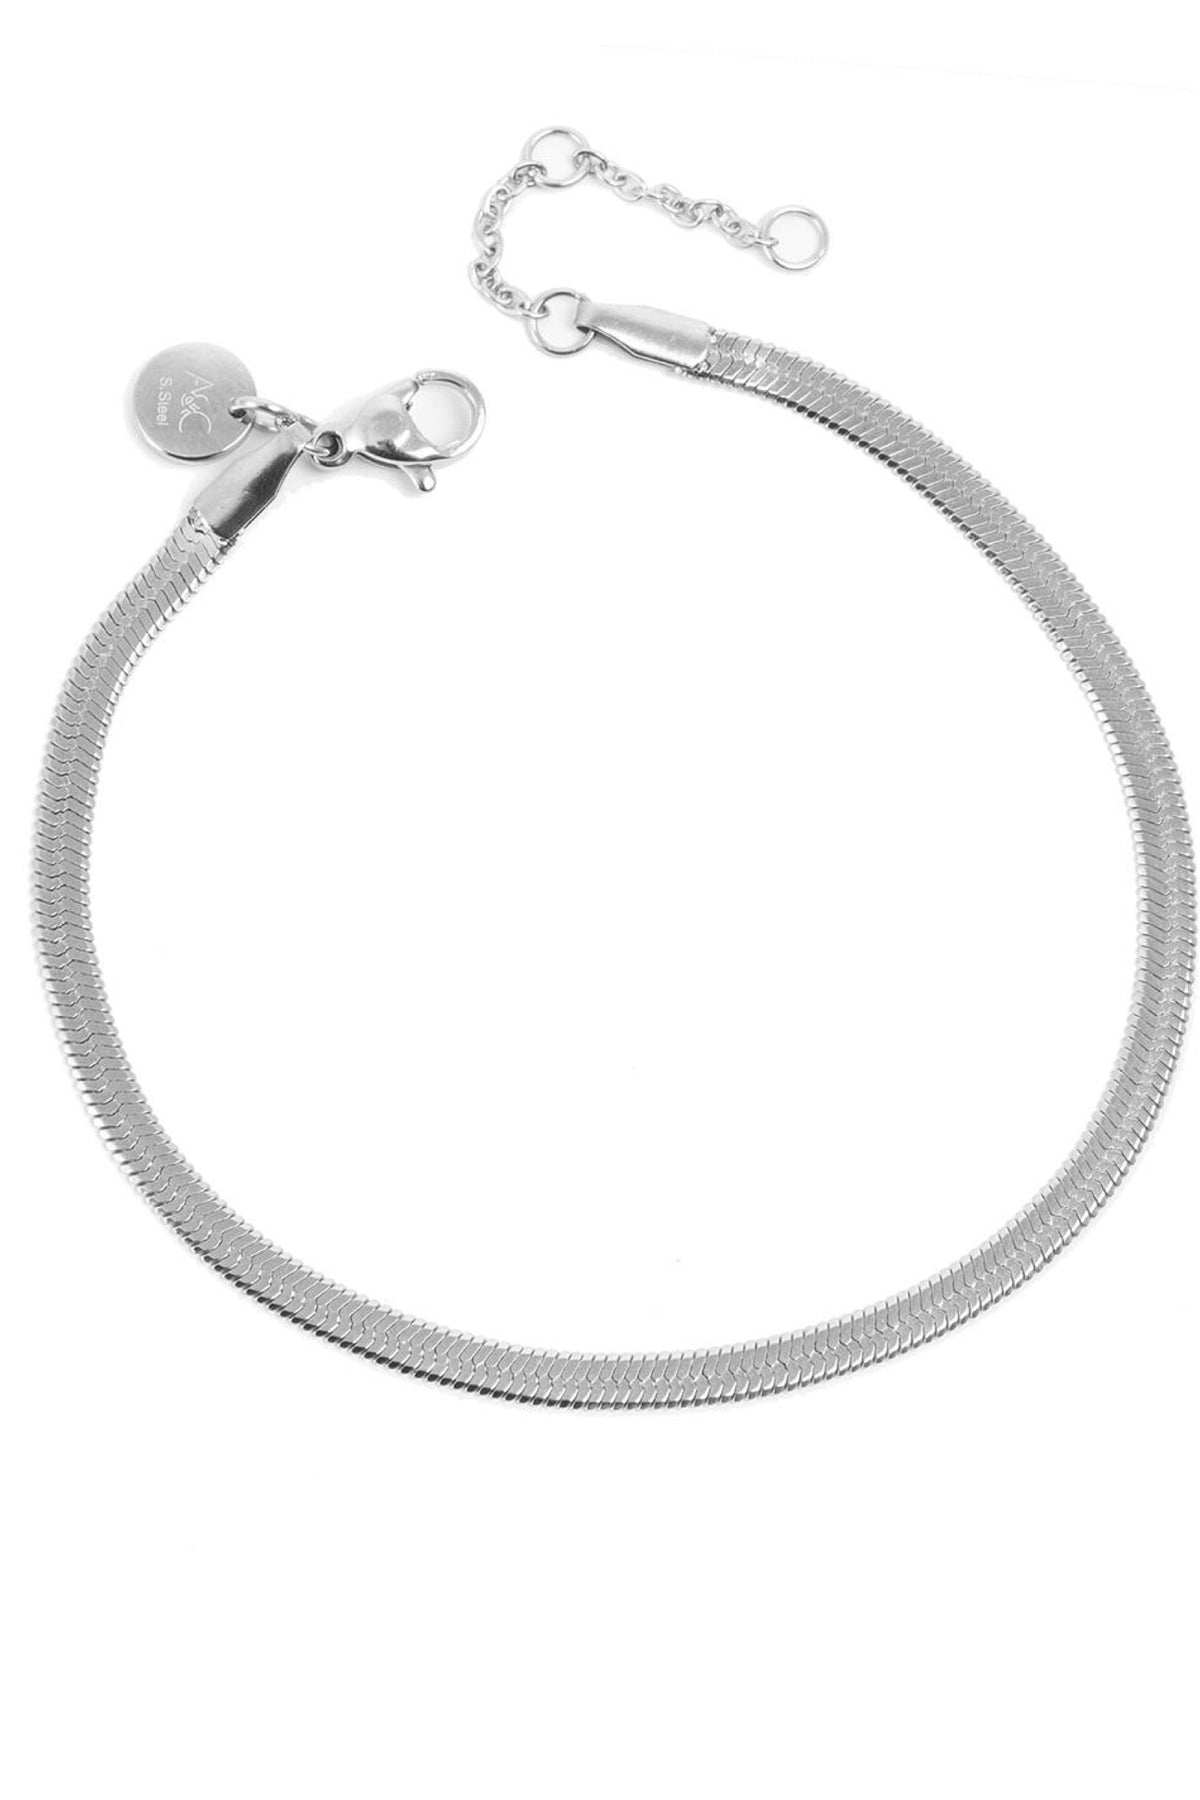 Snake Chain Unisex Bracelet Silver 17.5cm